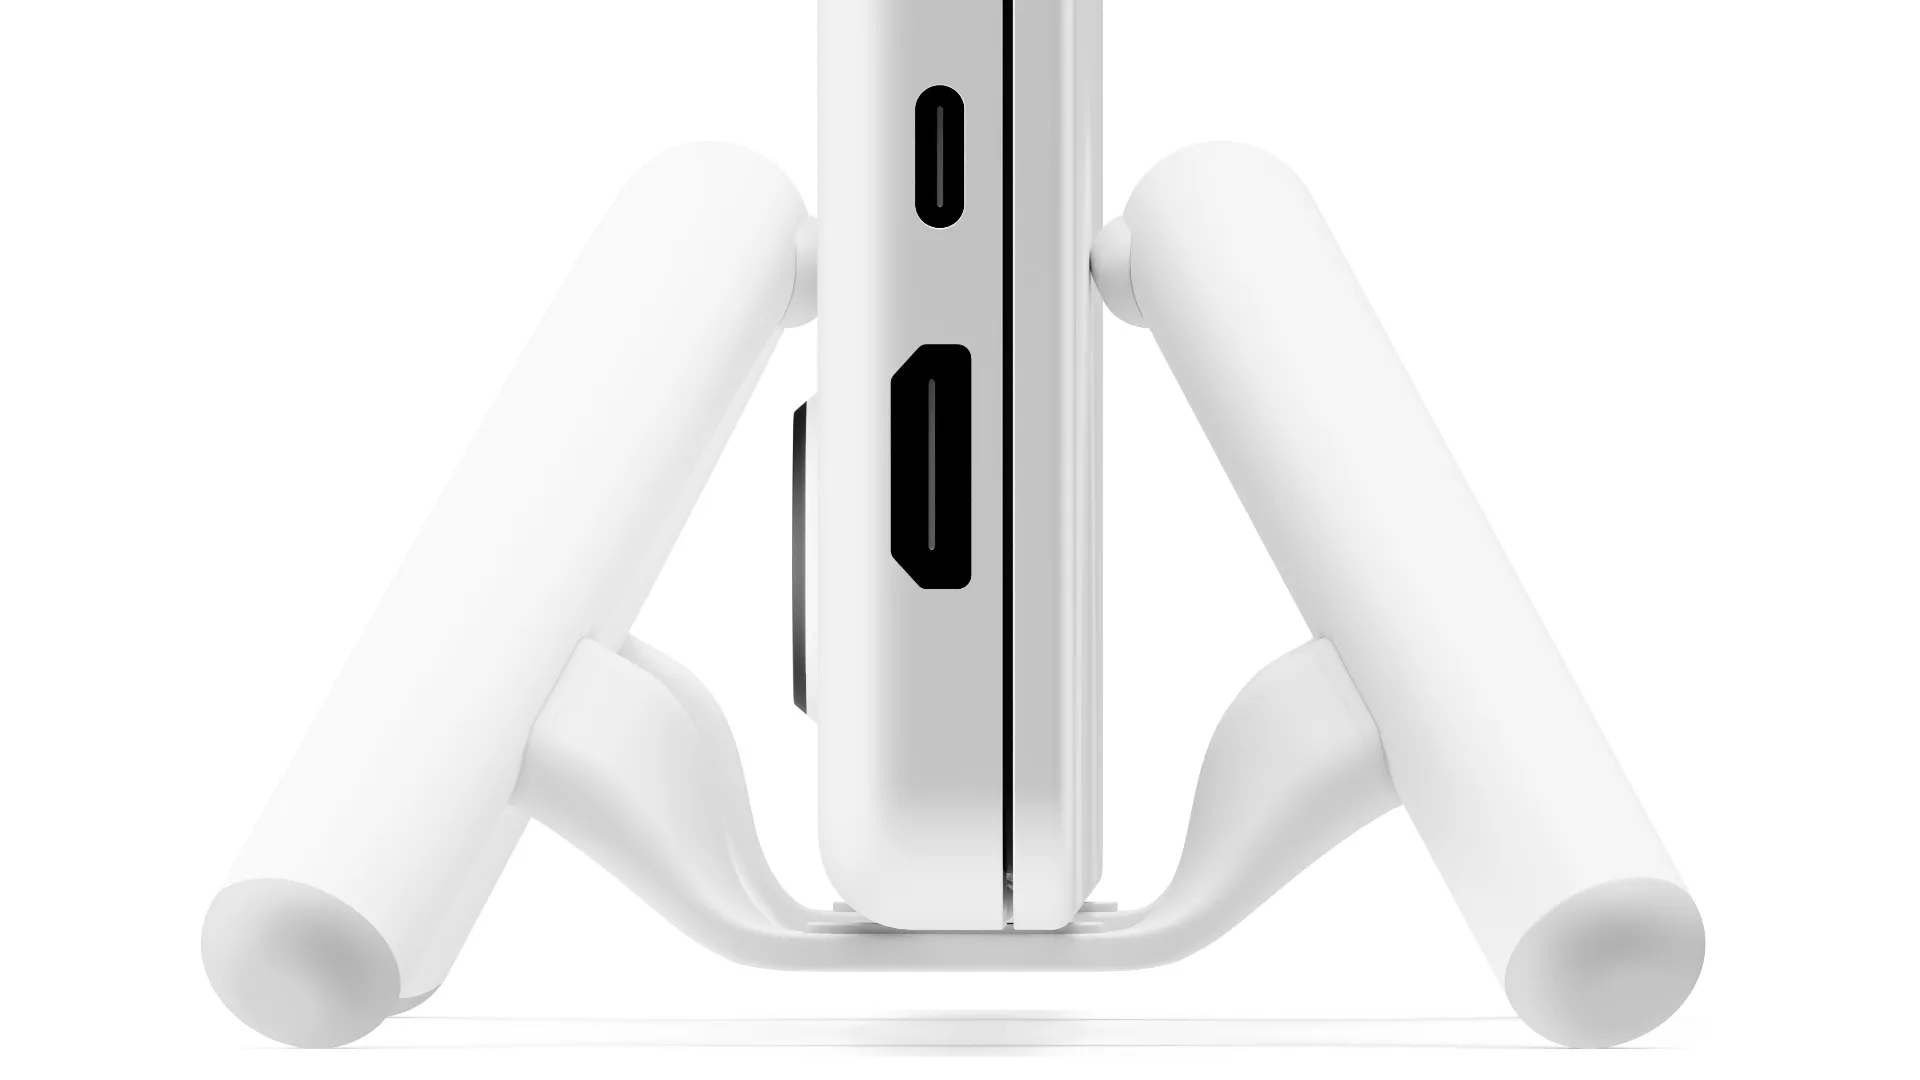 Sidovy av en MacBook Pro dockad i Twelve Souths BookArc Flex vertikala bärbara stativ